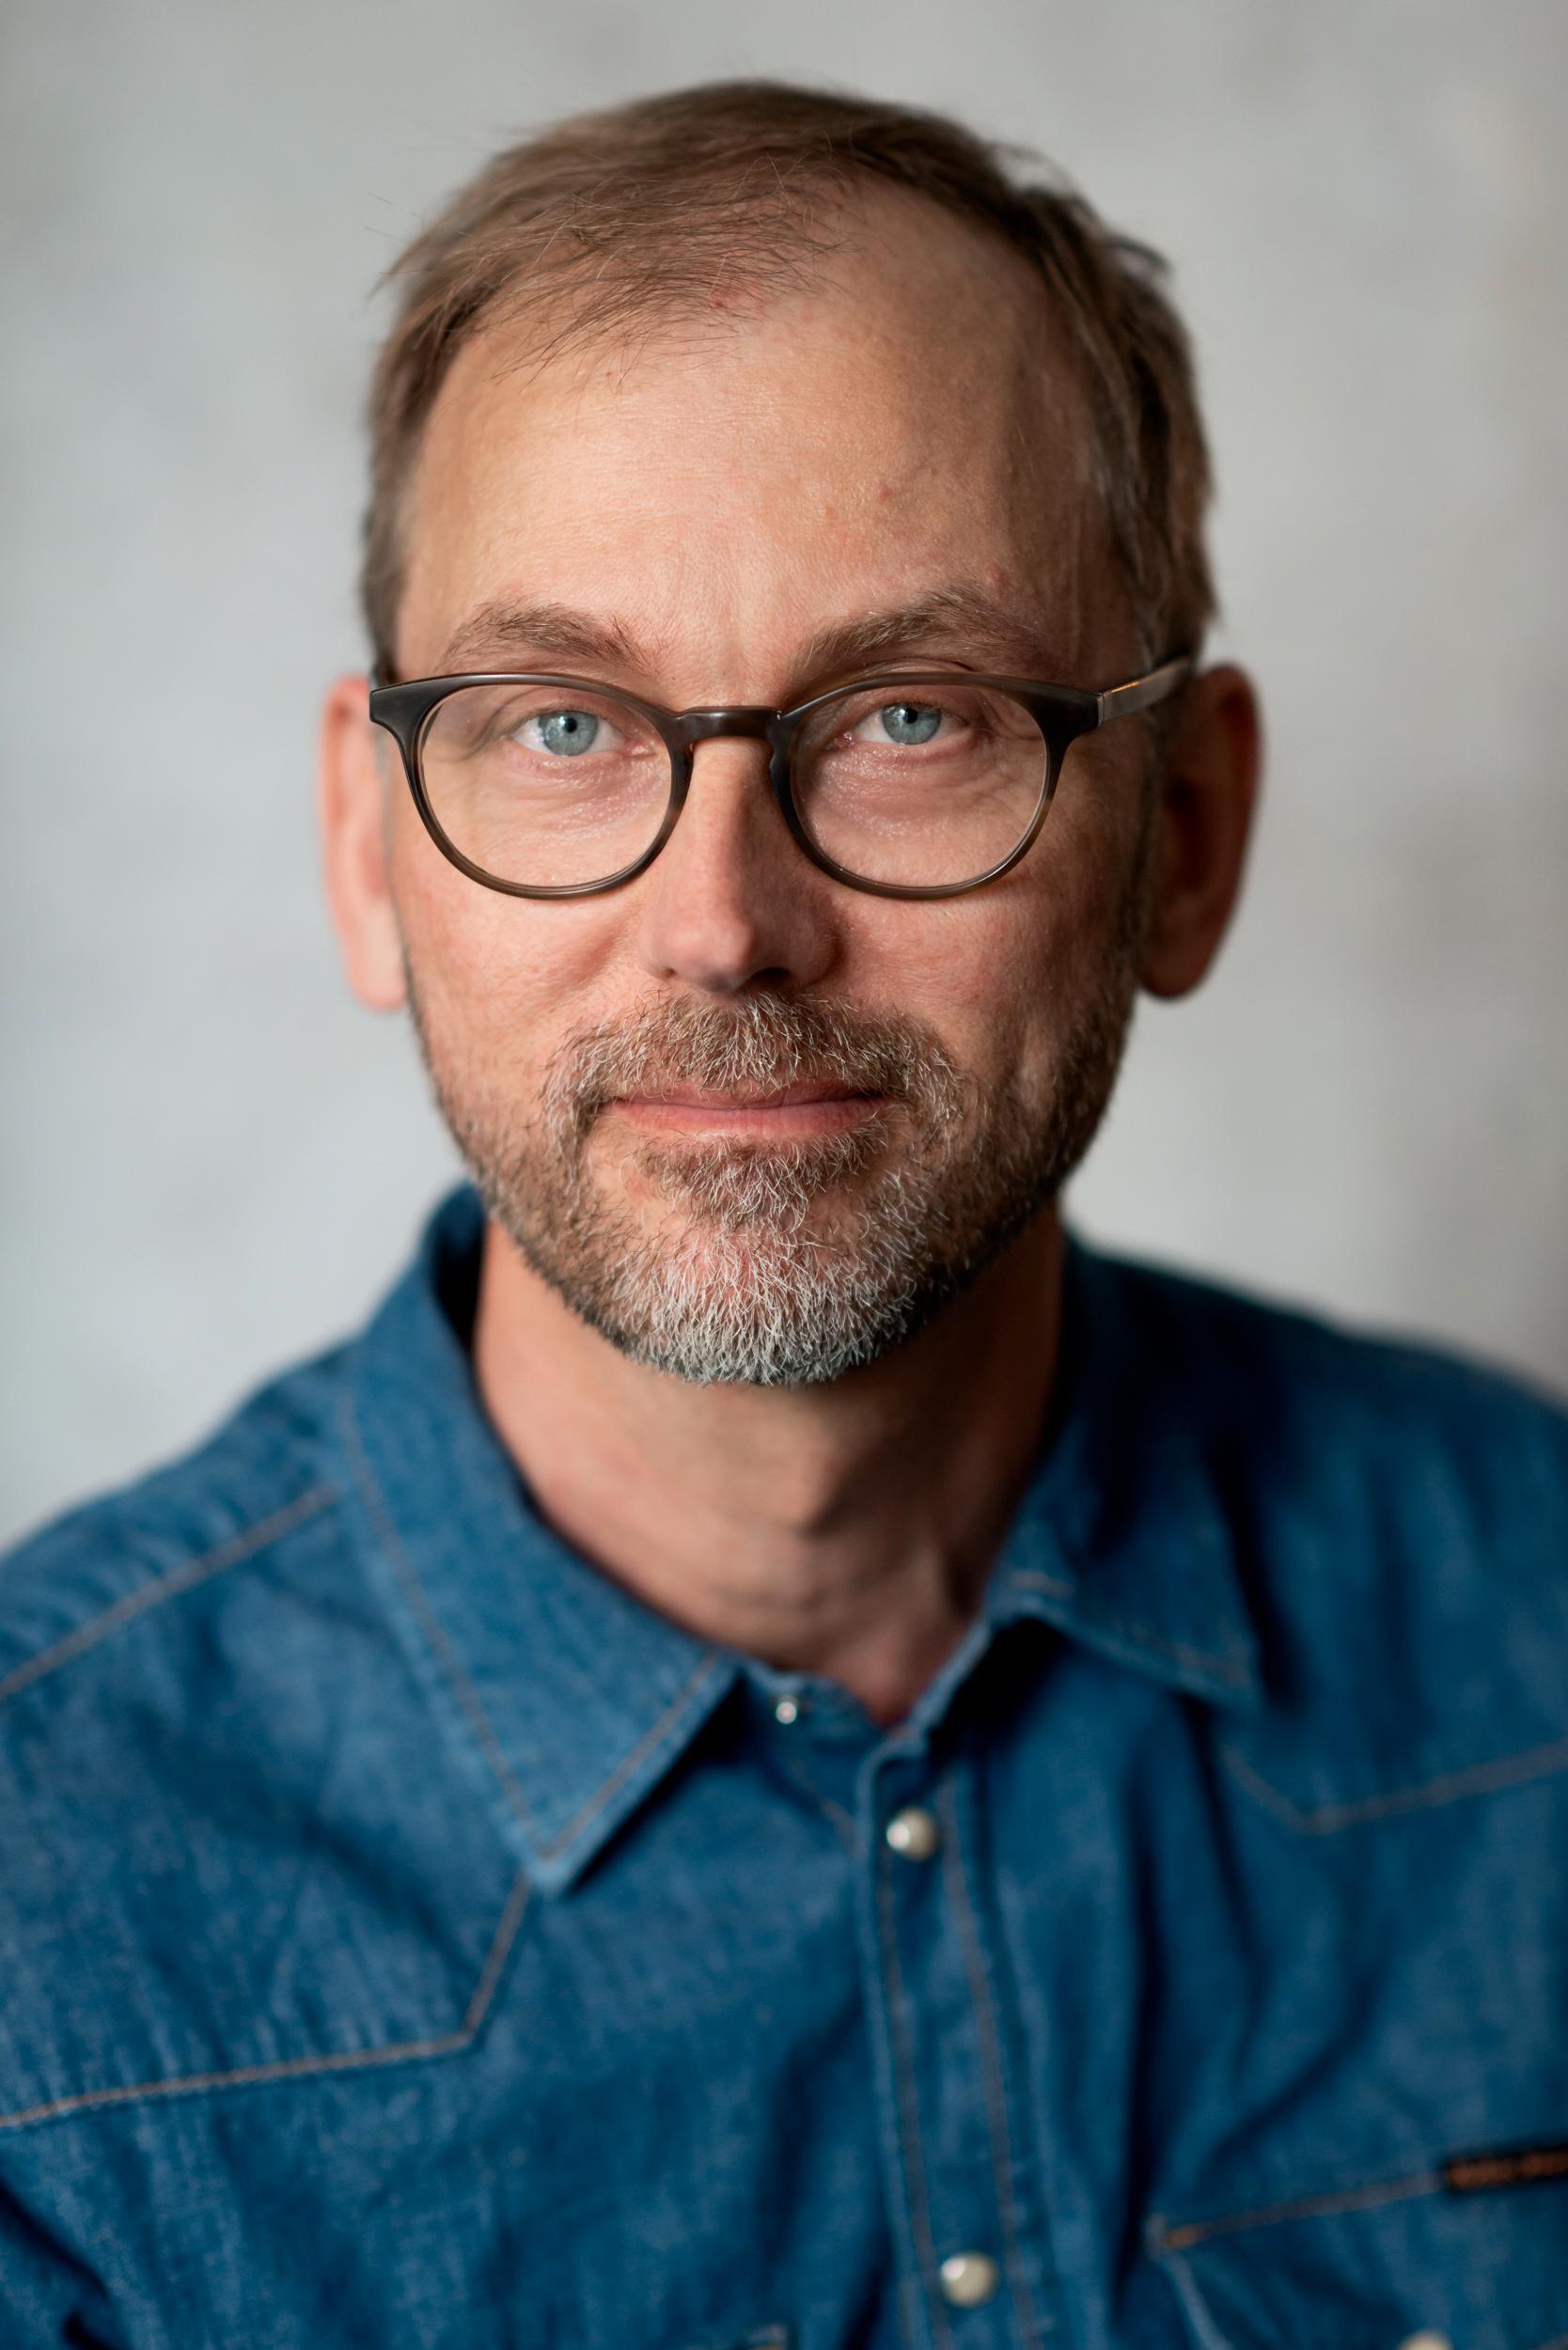 Pontus Wasling är hjärnforskare och överläkare vid Sahlgrenska Universitetssjukhuset i Göteborg. Han har skrivit flera populärvetenskapliga böcker om hjärnan och minnet. Senaste boken heter Knaster och handlar om vårt medvetande.